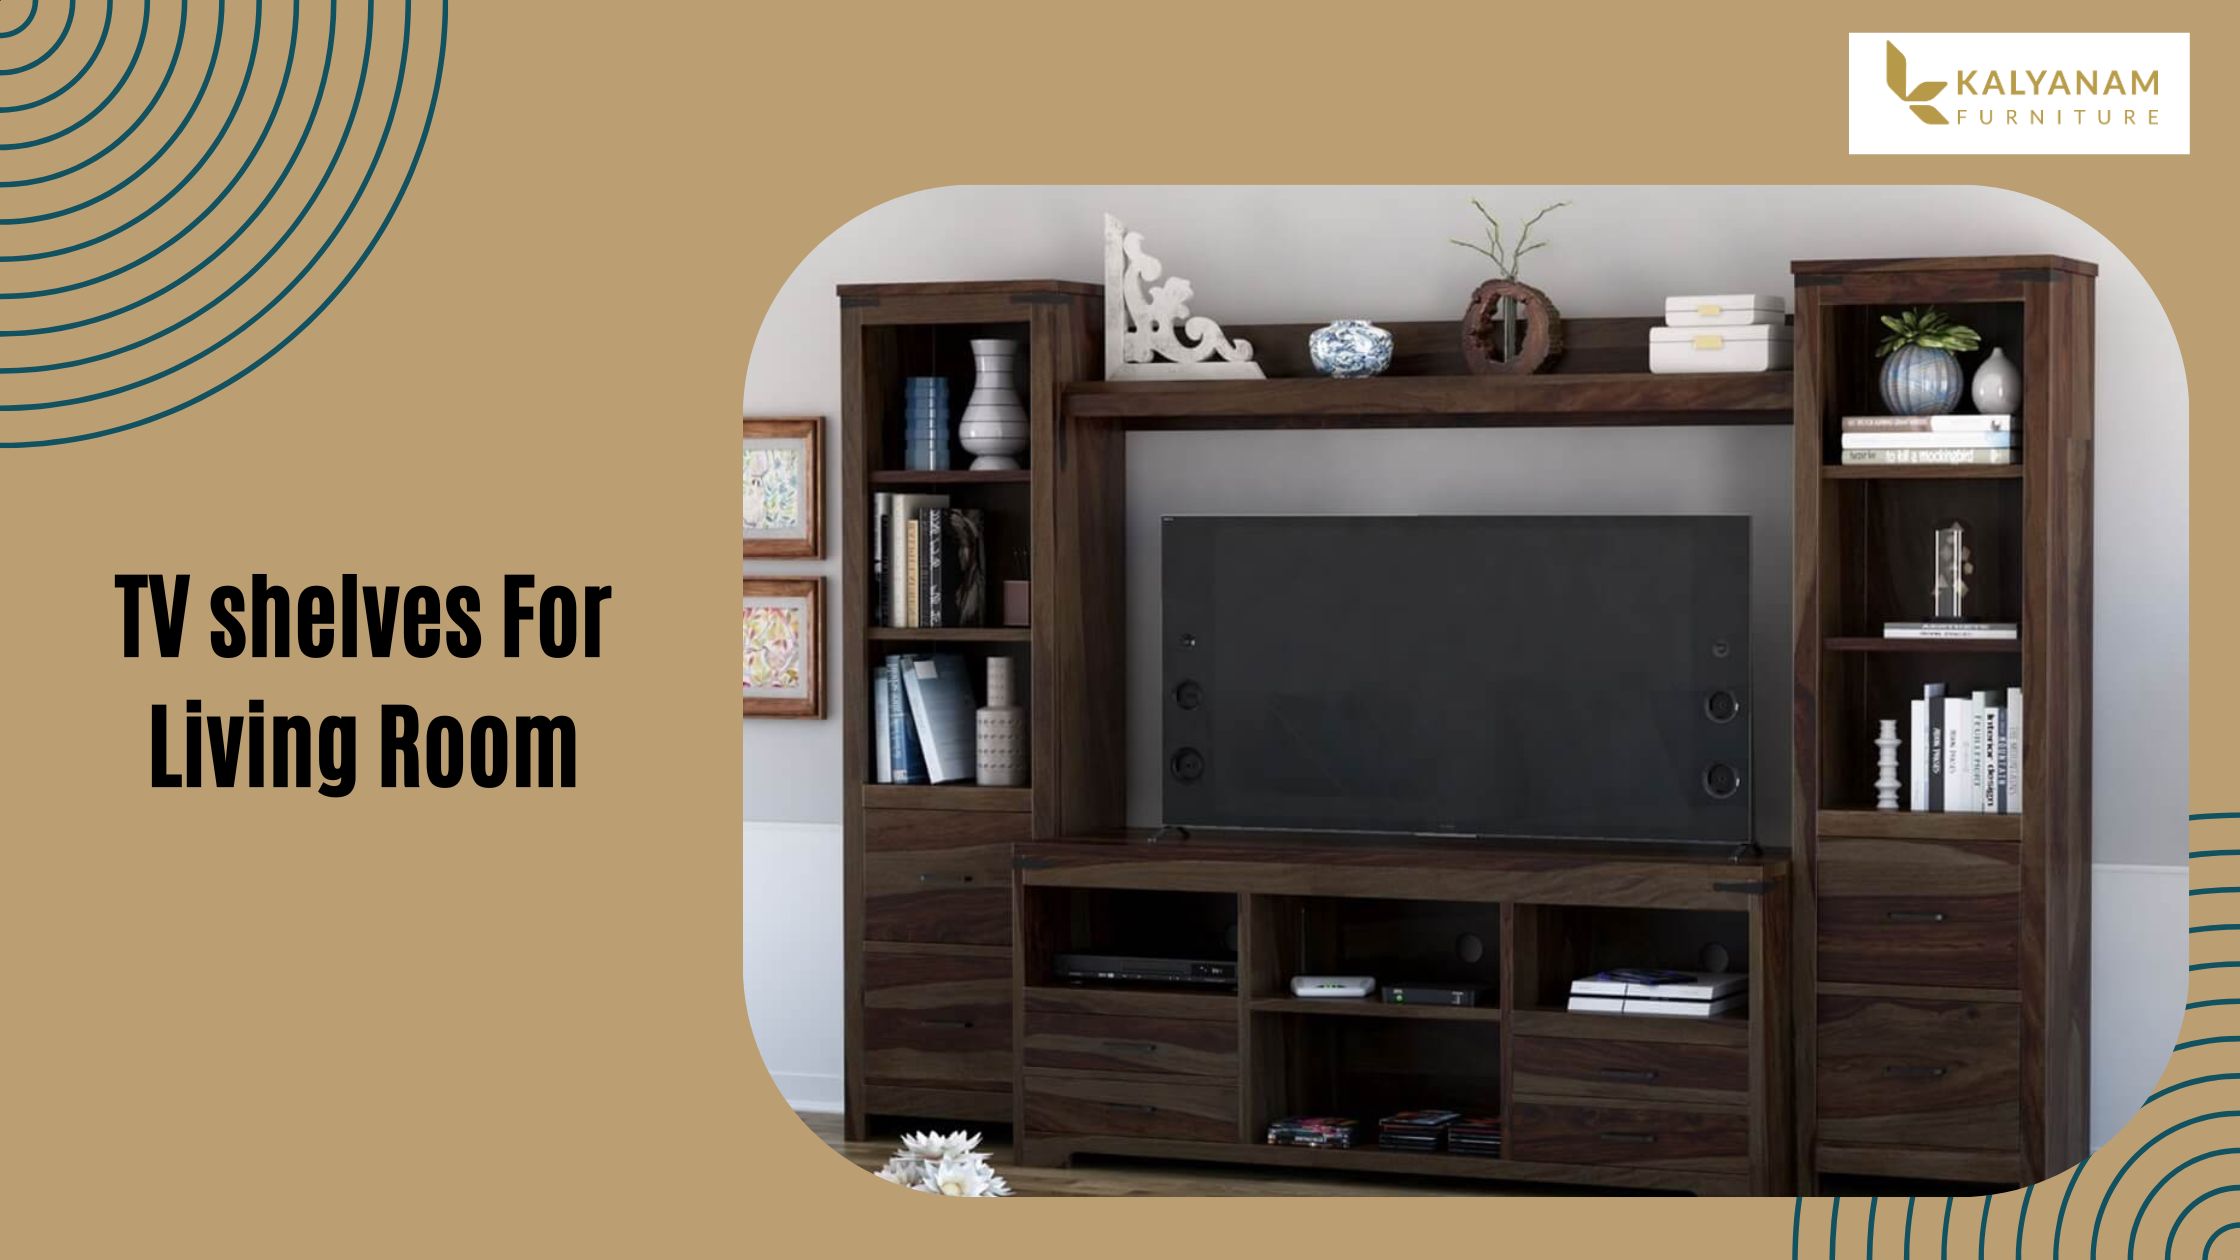 TV shelves For Living Room